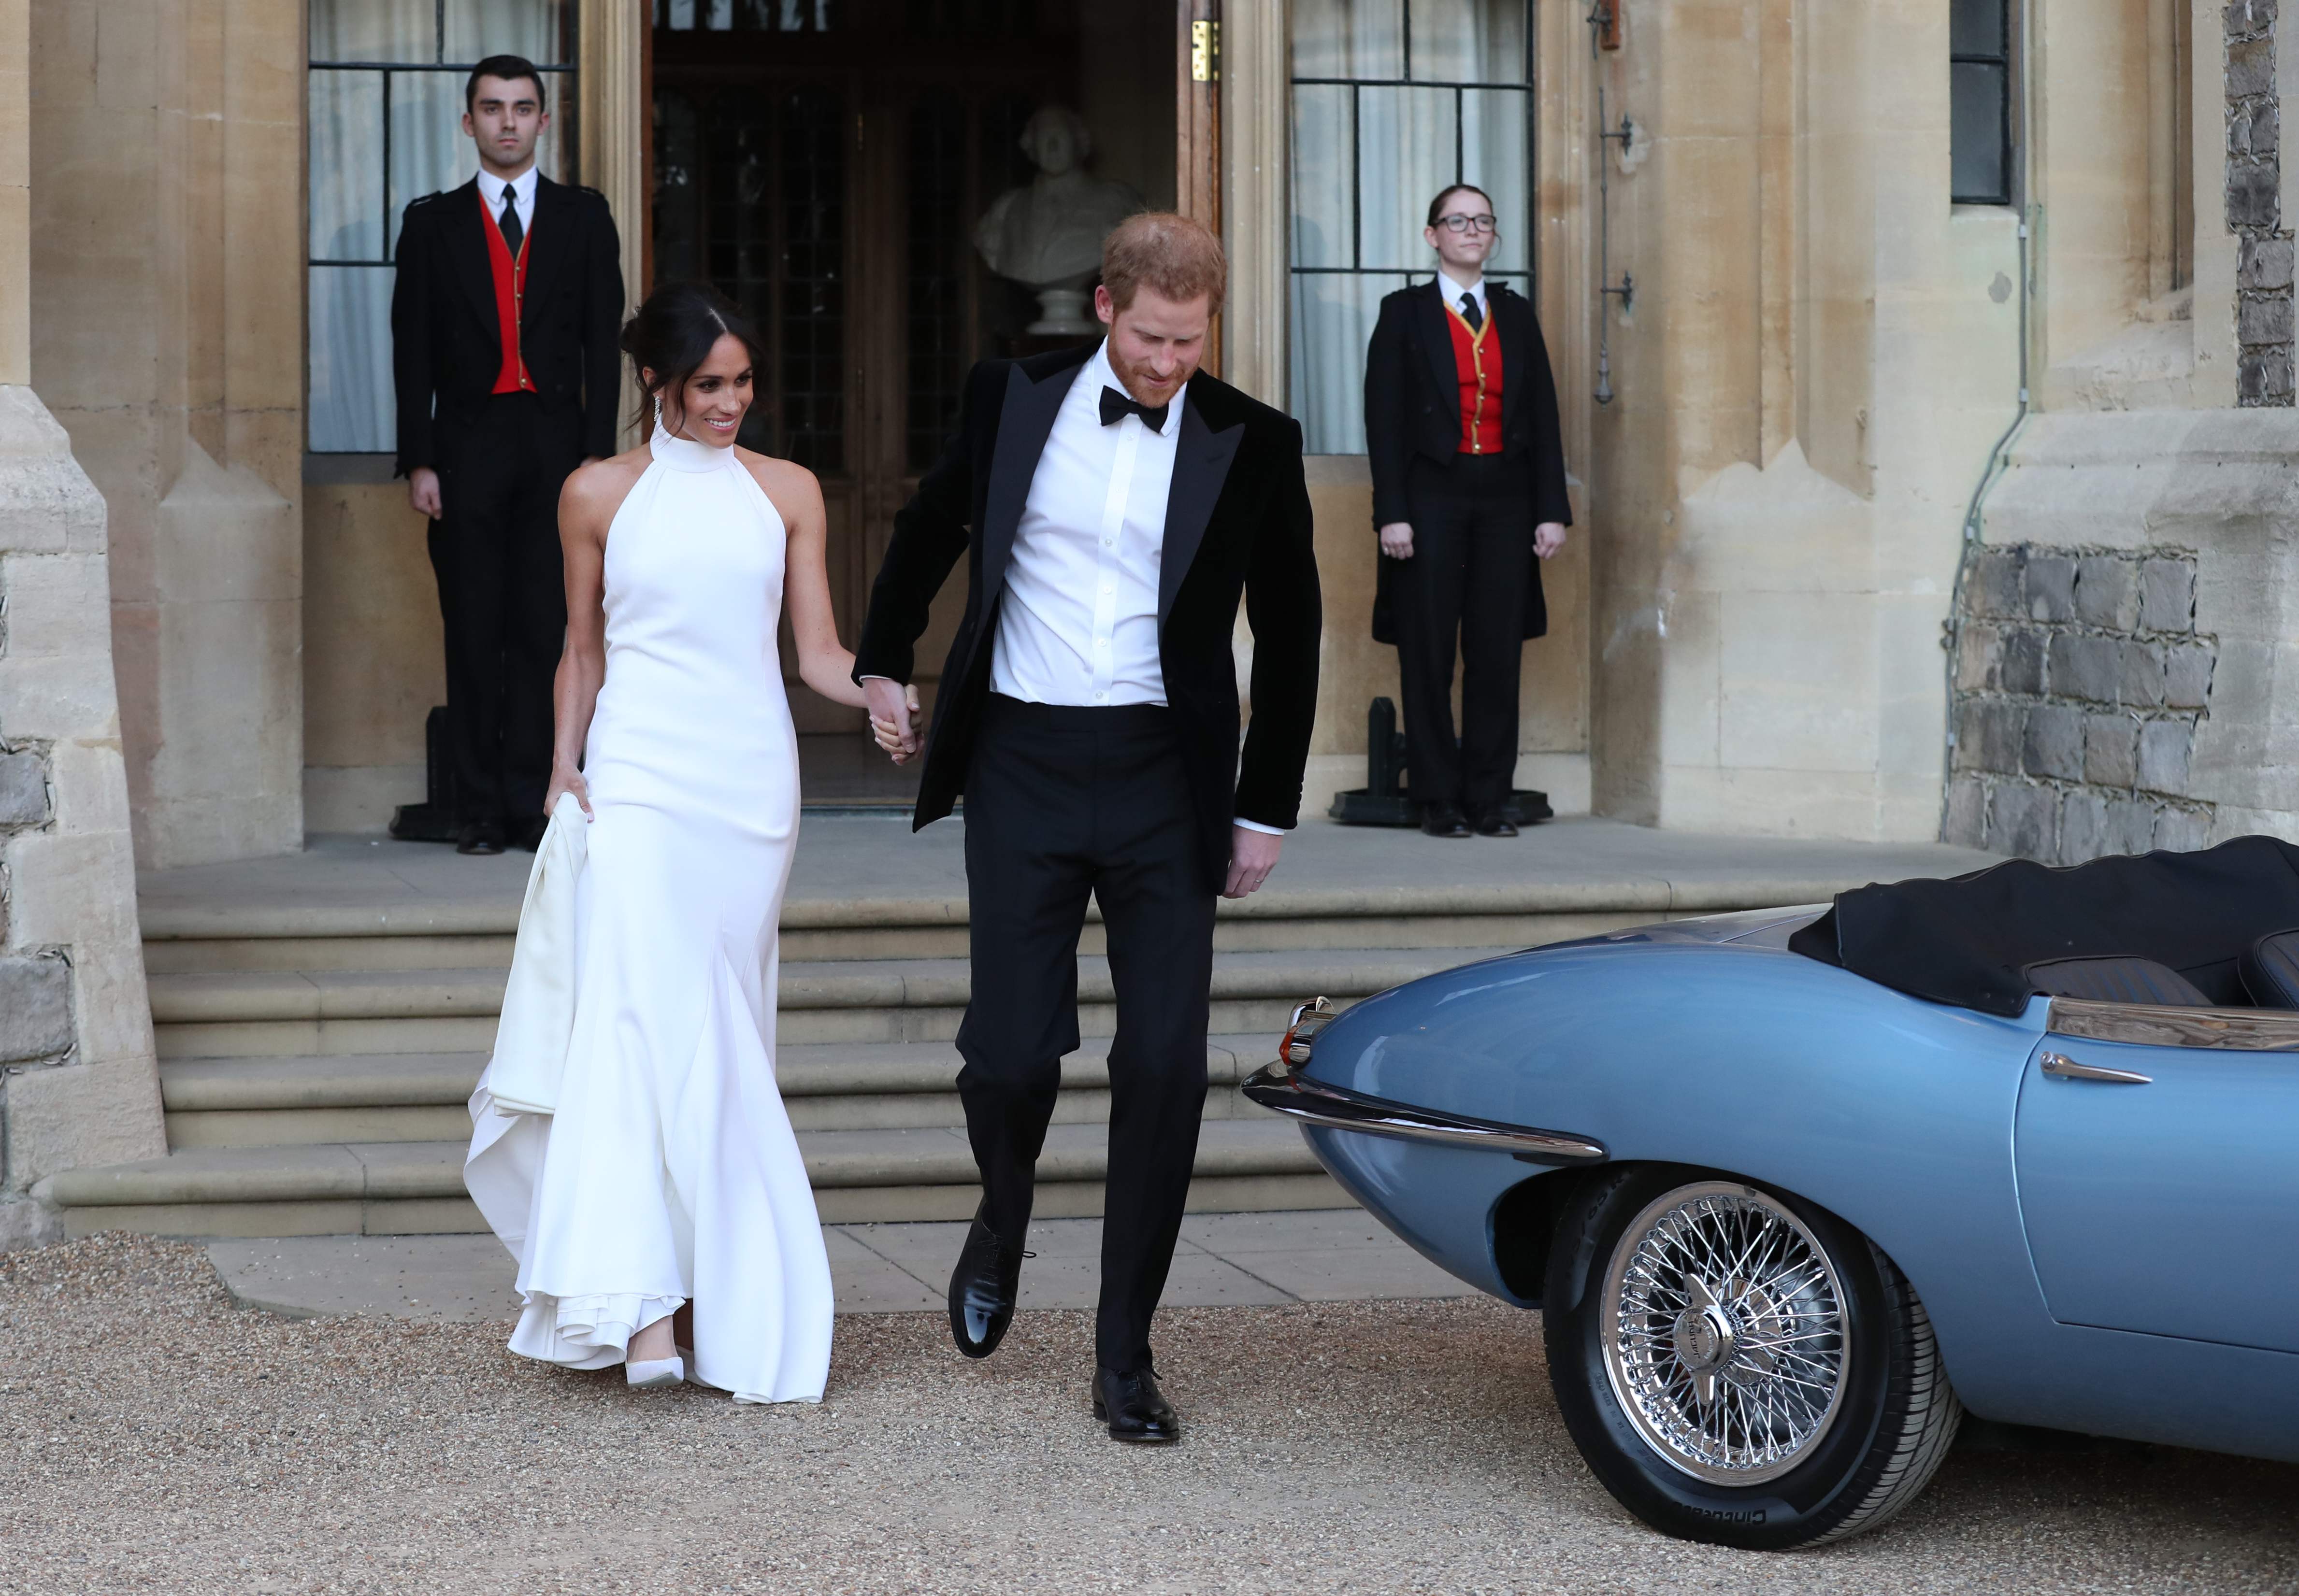 الأمير هارى يصطحب زوجته ماركل فى جولة بسيارته الخاصة بعد الزفاف